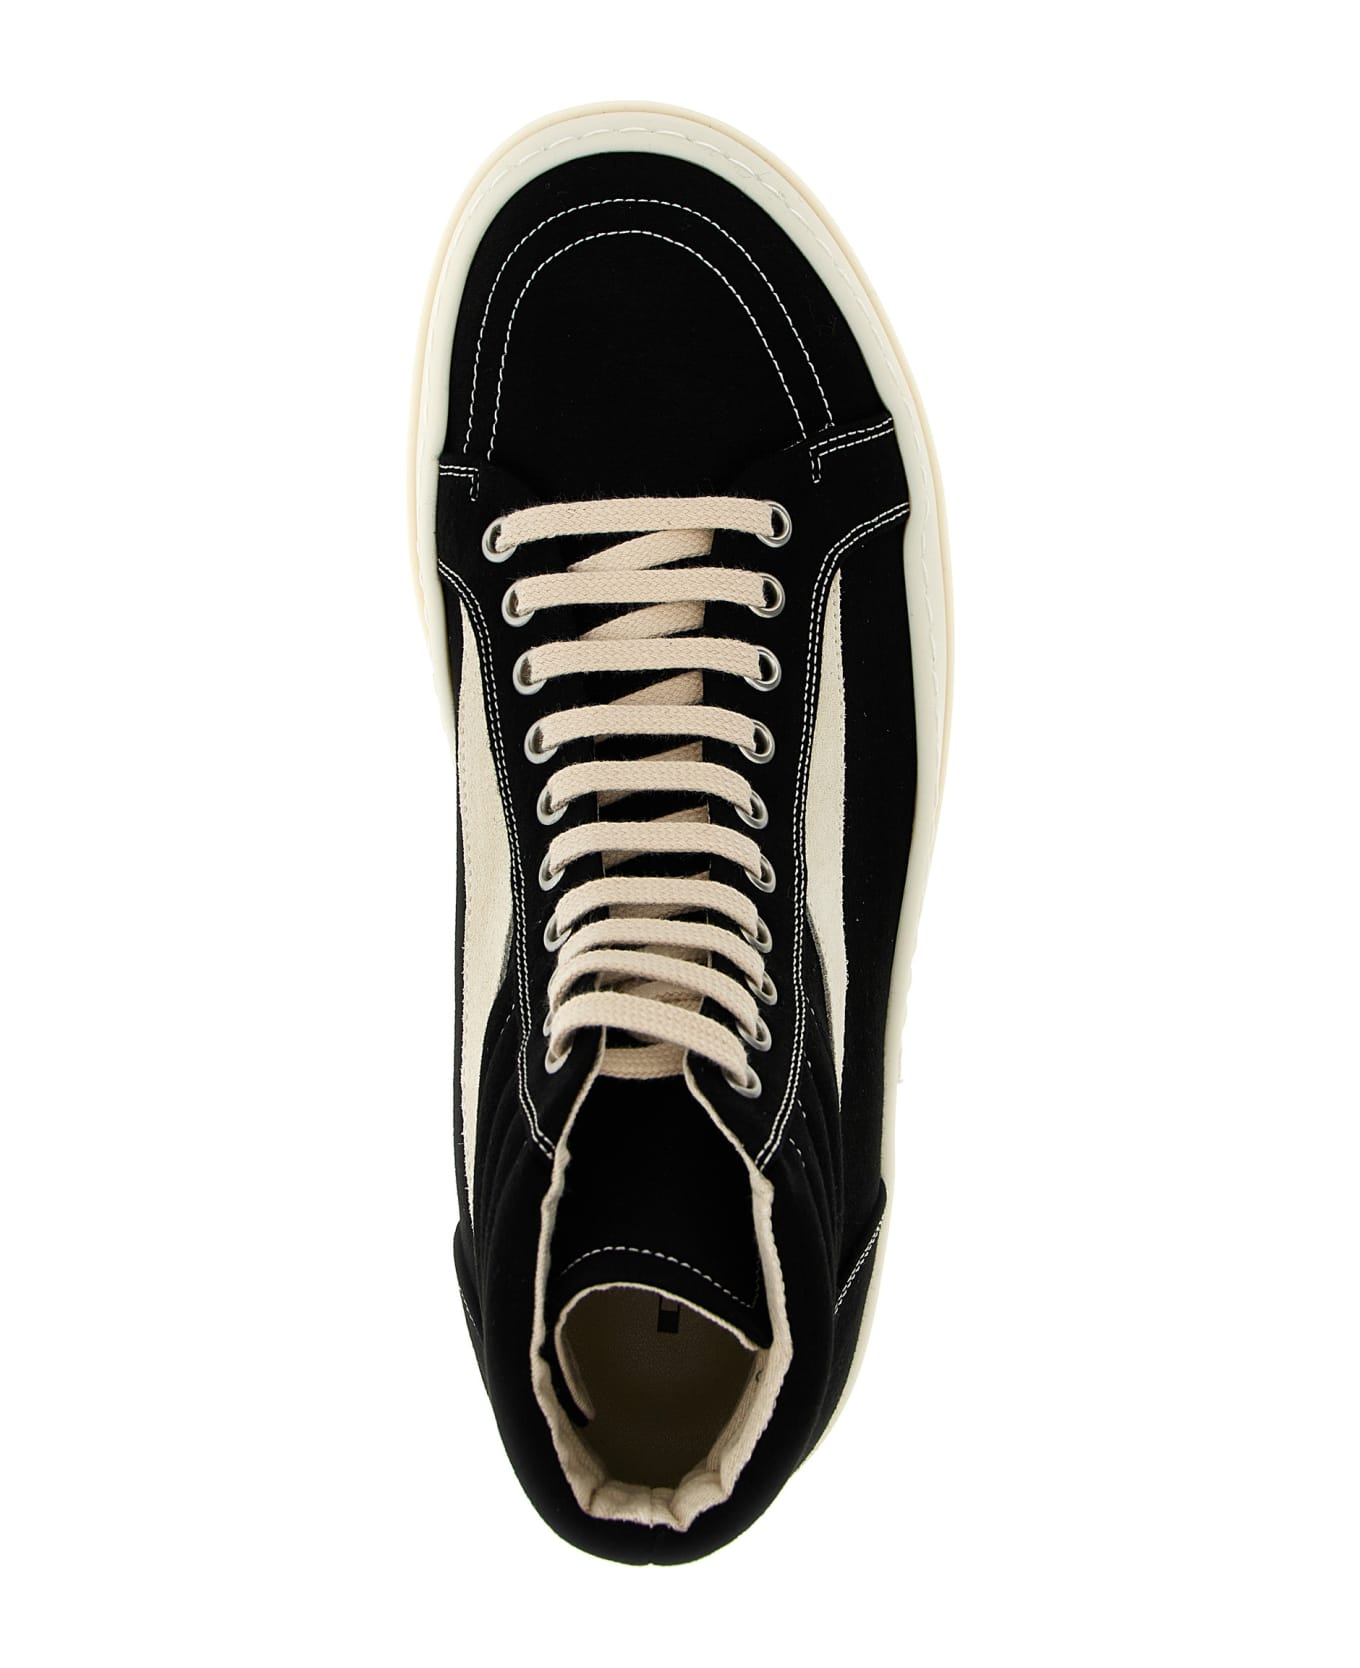 DRKSHDW 'vintage High Sneaks' Sneakers - White/Black スニーカー